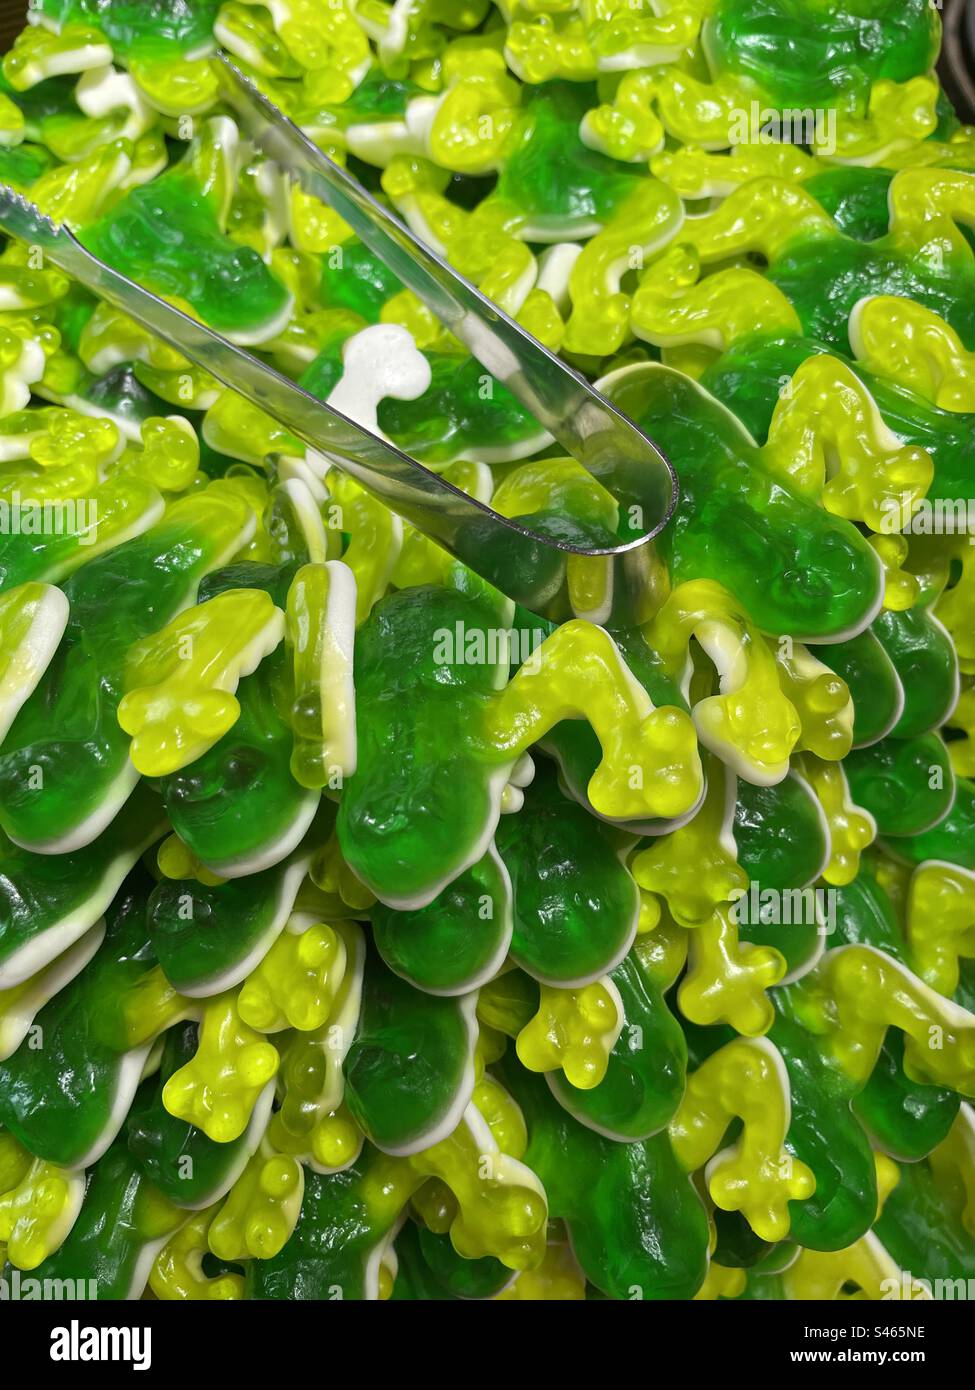 Grenouilles gelées vertes à vendre dans un magasin de pick and mix, avec pinces de service. Banque D'Images